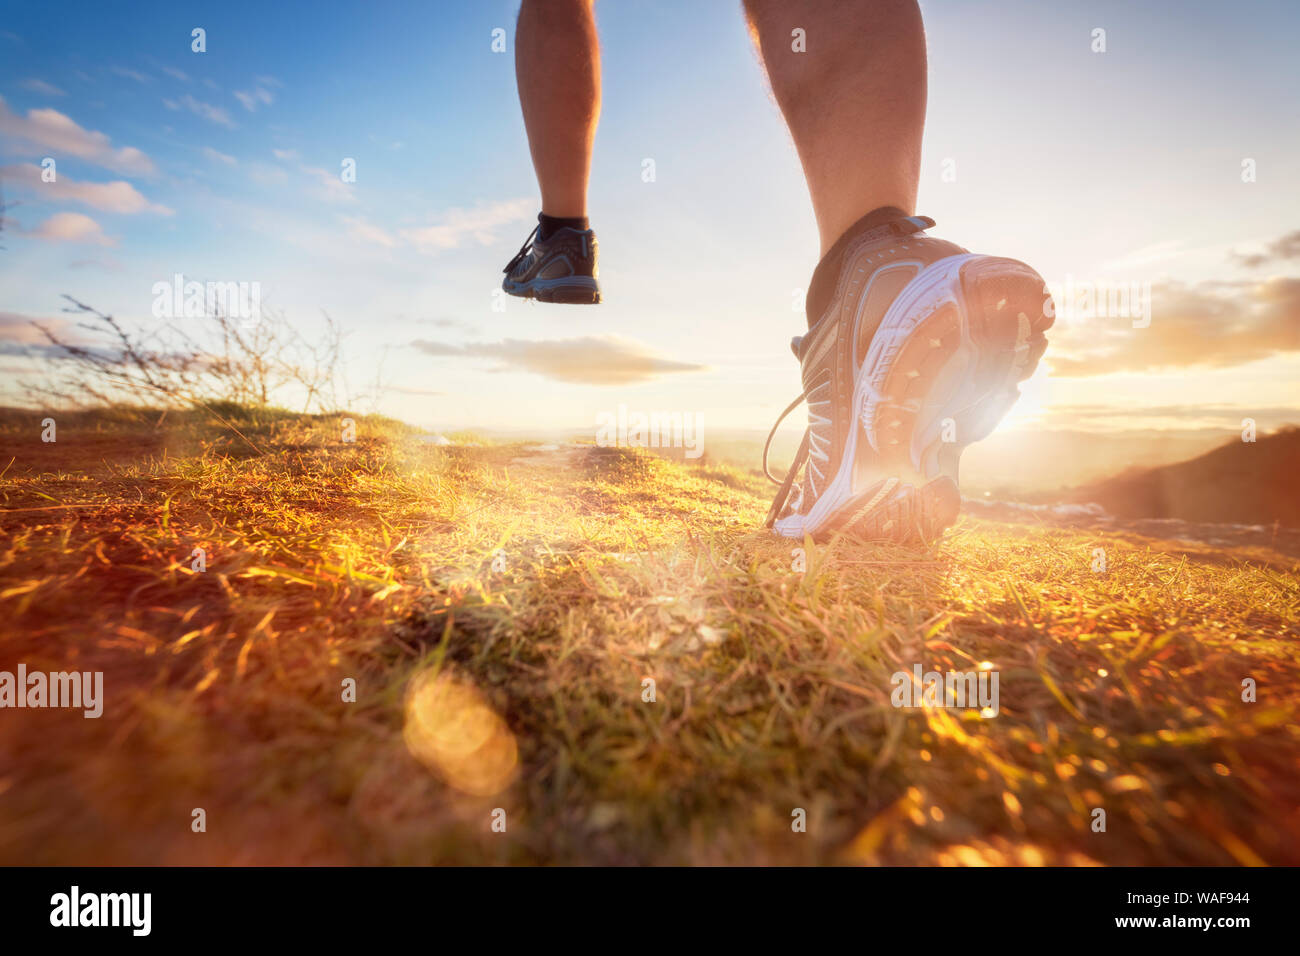 Outdoor Langlauf im morgendlichen Sonnenaufgang Konzept laufen für Training, Fitness und gesunde Lebensweise Stockfoto